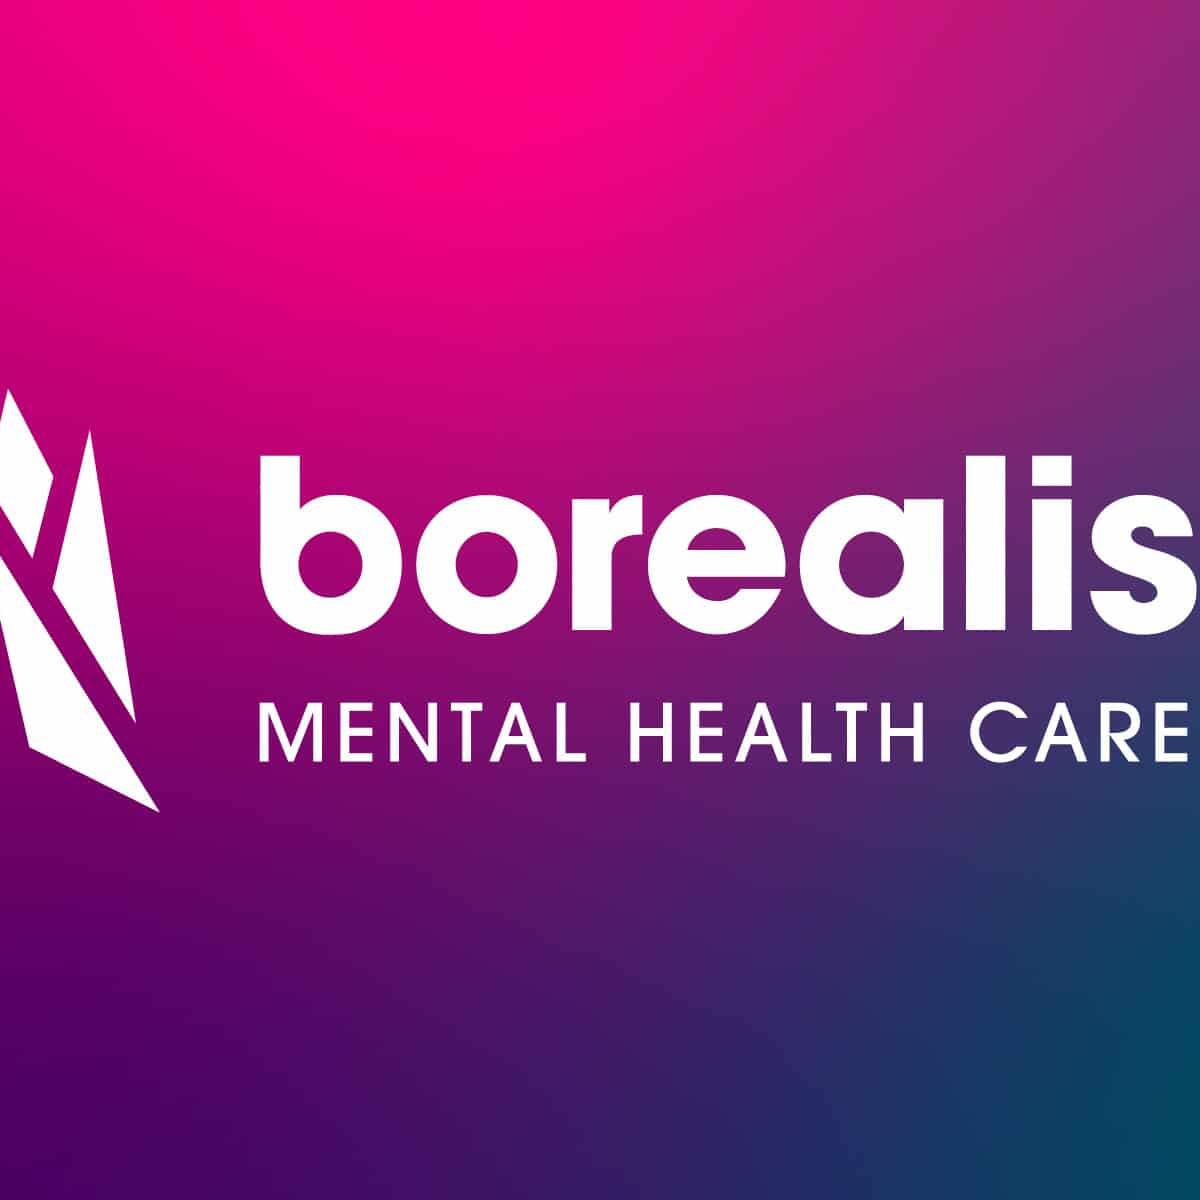 Borealis-ontario-mental-health-care-logo-brand-design